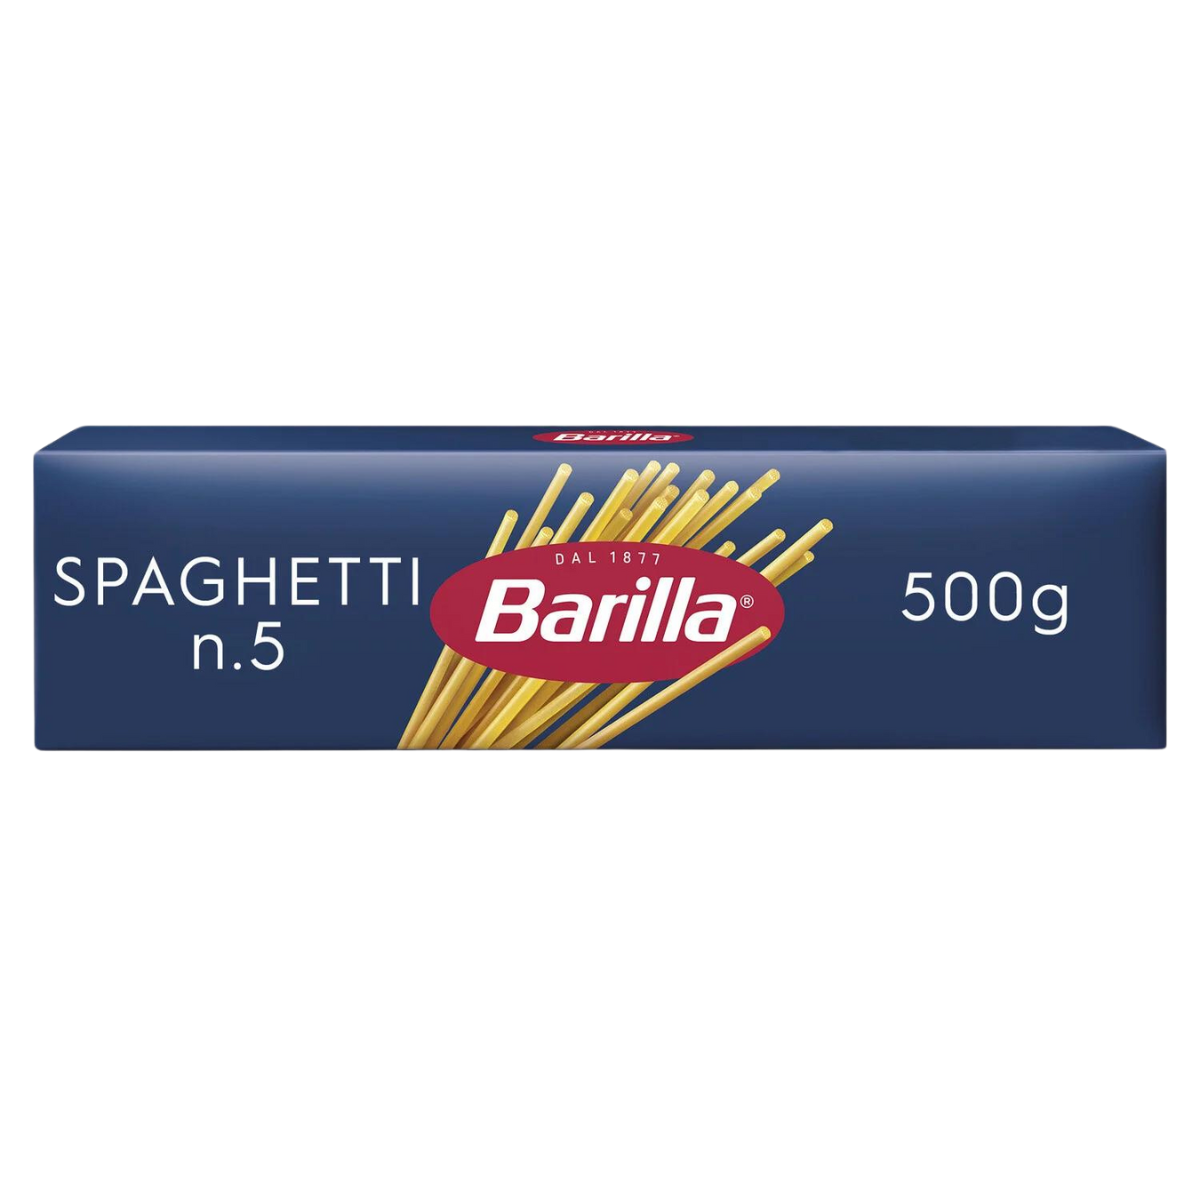 Pâtes Barilla Spaghetti 500g